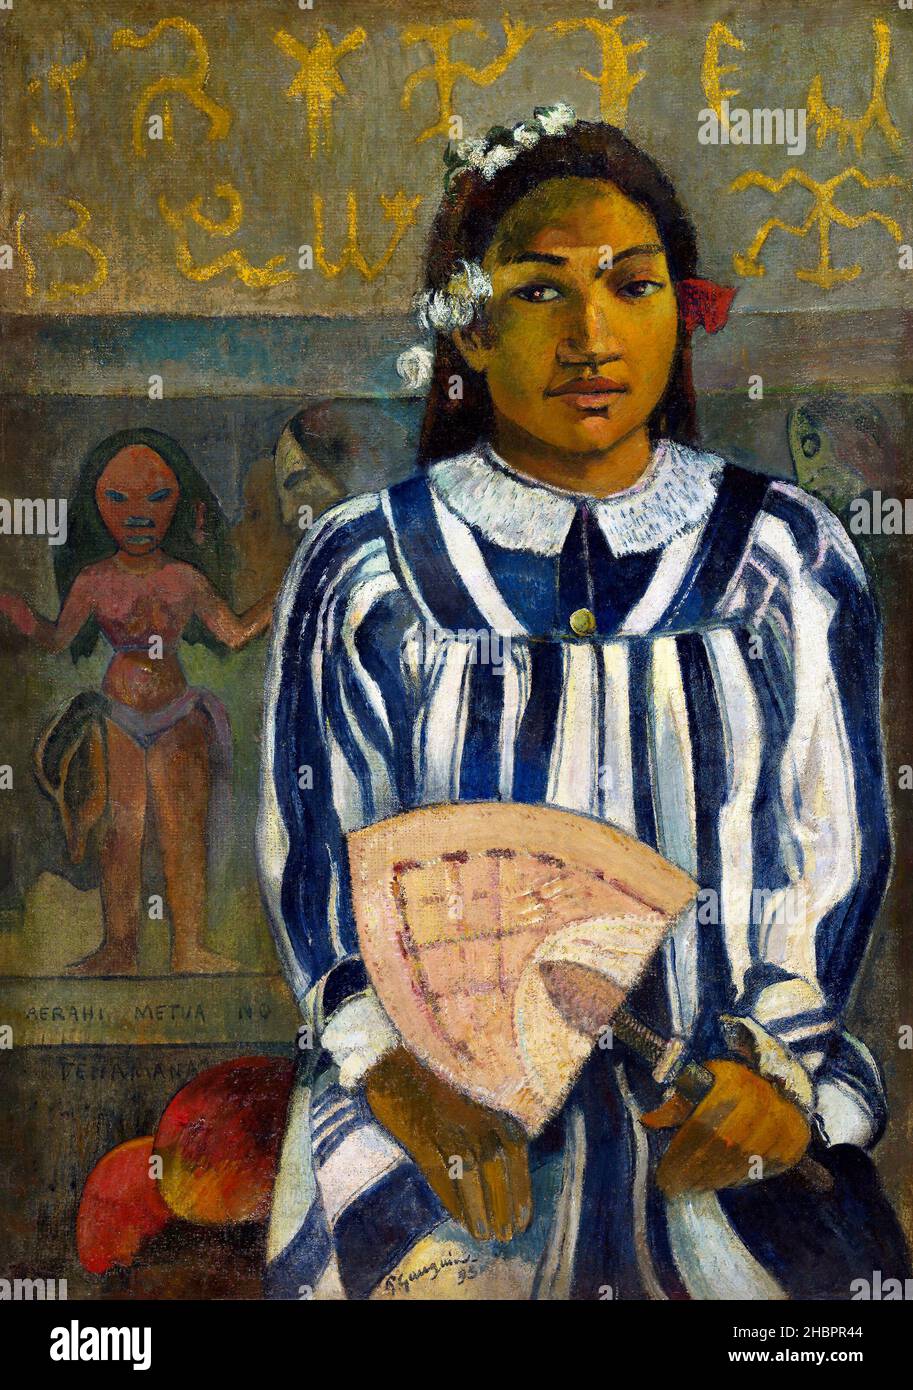 Tehamana a beaucoup de parents ou les ancêtres de Tehamana (Merahi metua no Tehamana) (1893) par Paul Gauguin. Banque D'Images